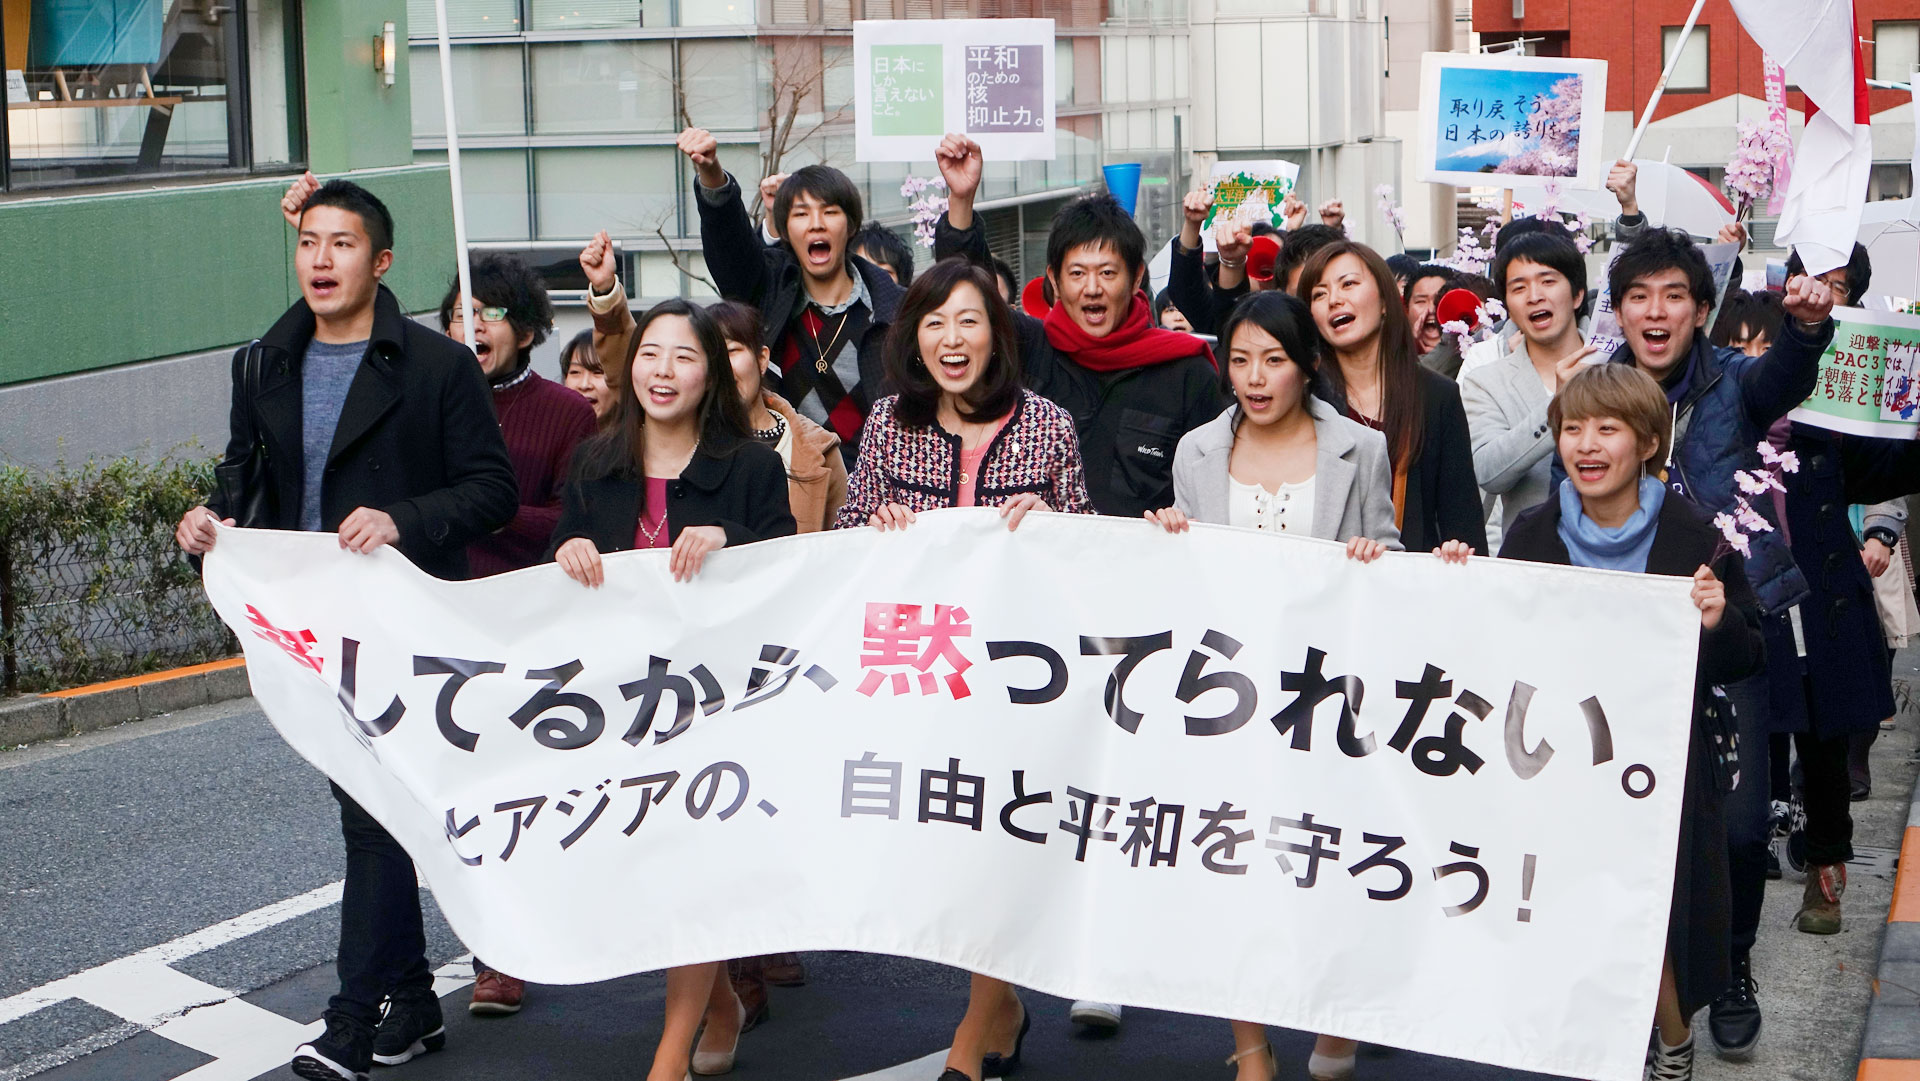 2月28日。若者1,200名が、渋谷に集まりデモを開催！